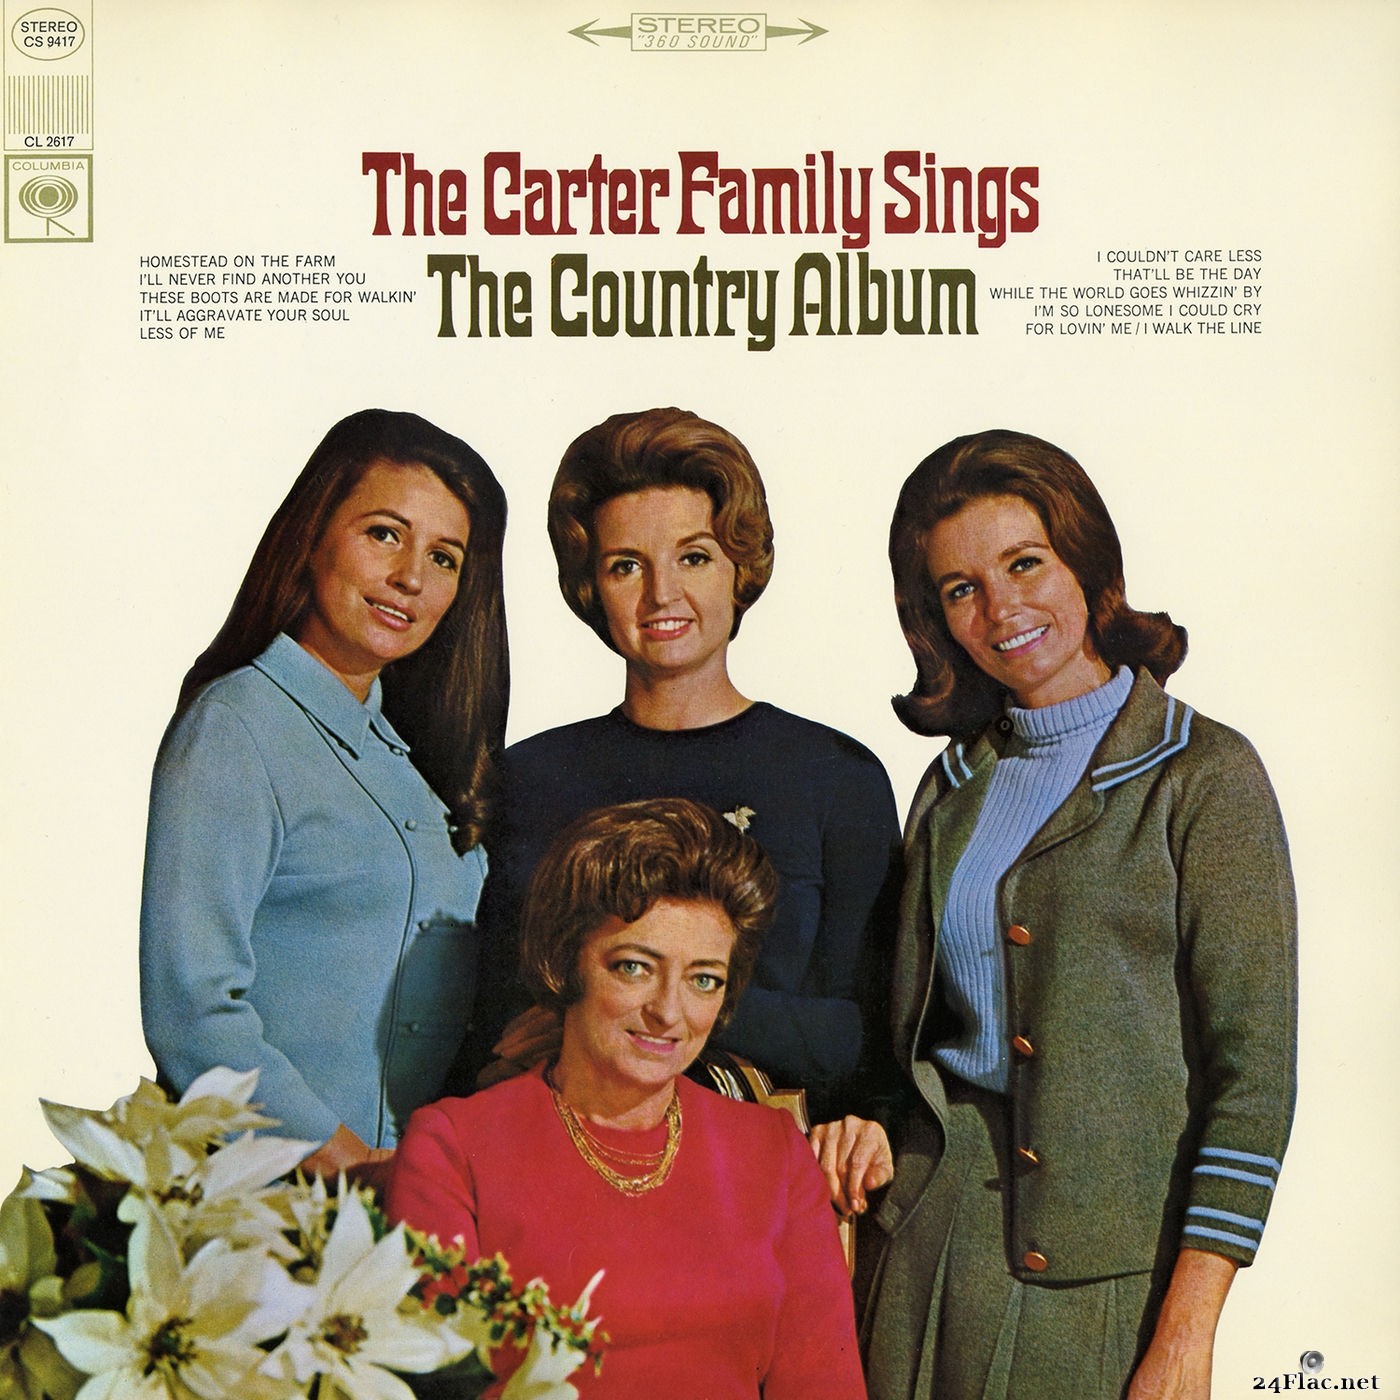 The Carter Family - The Carter Family Sings the Country Album (2017) Hi-Res